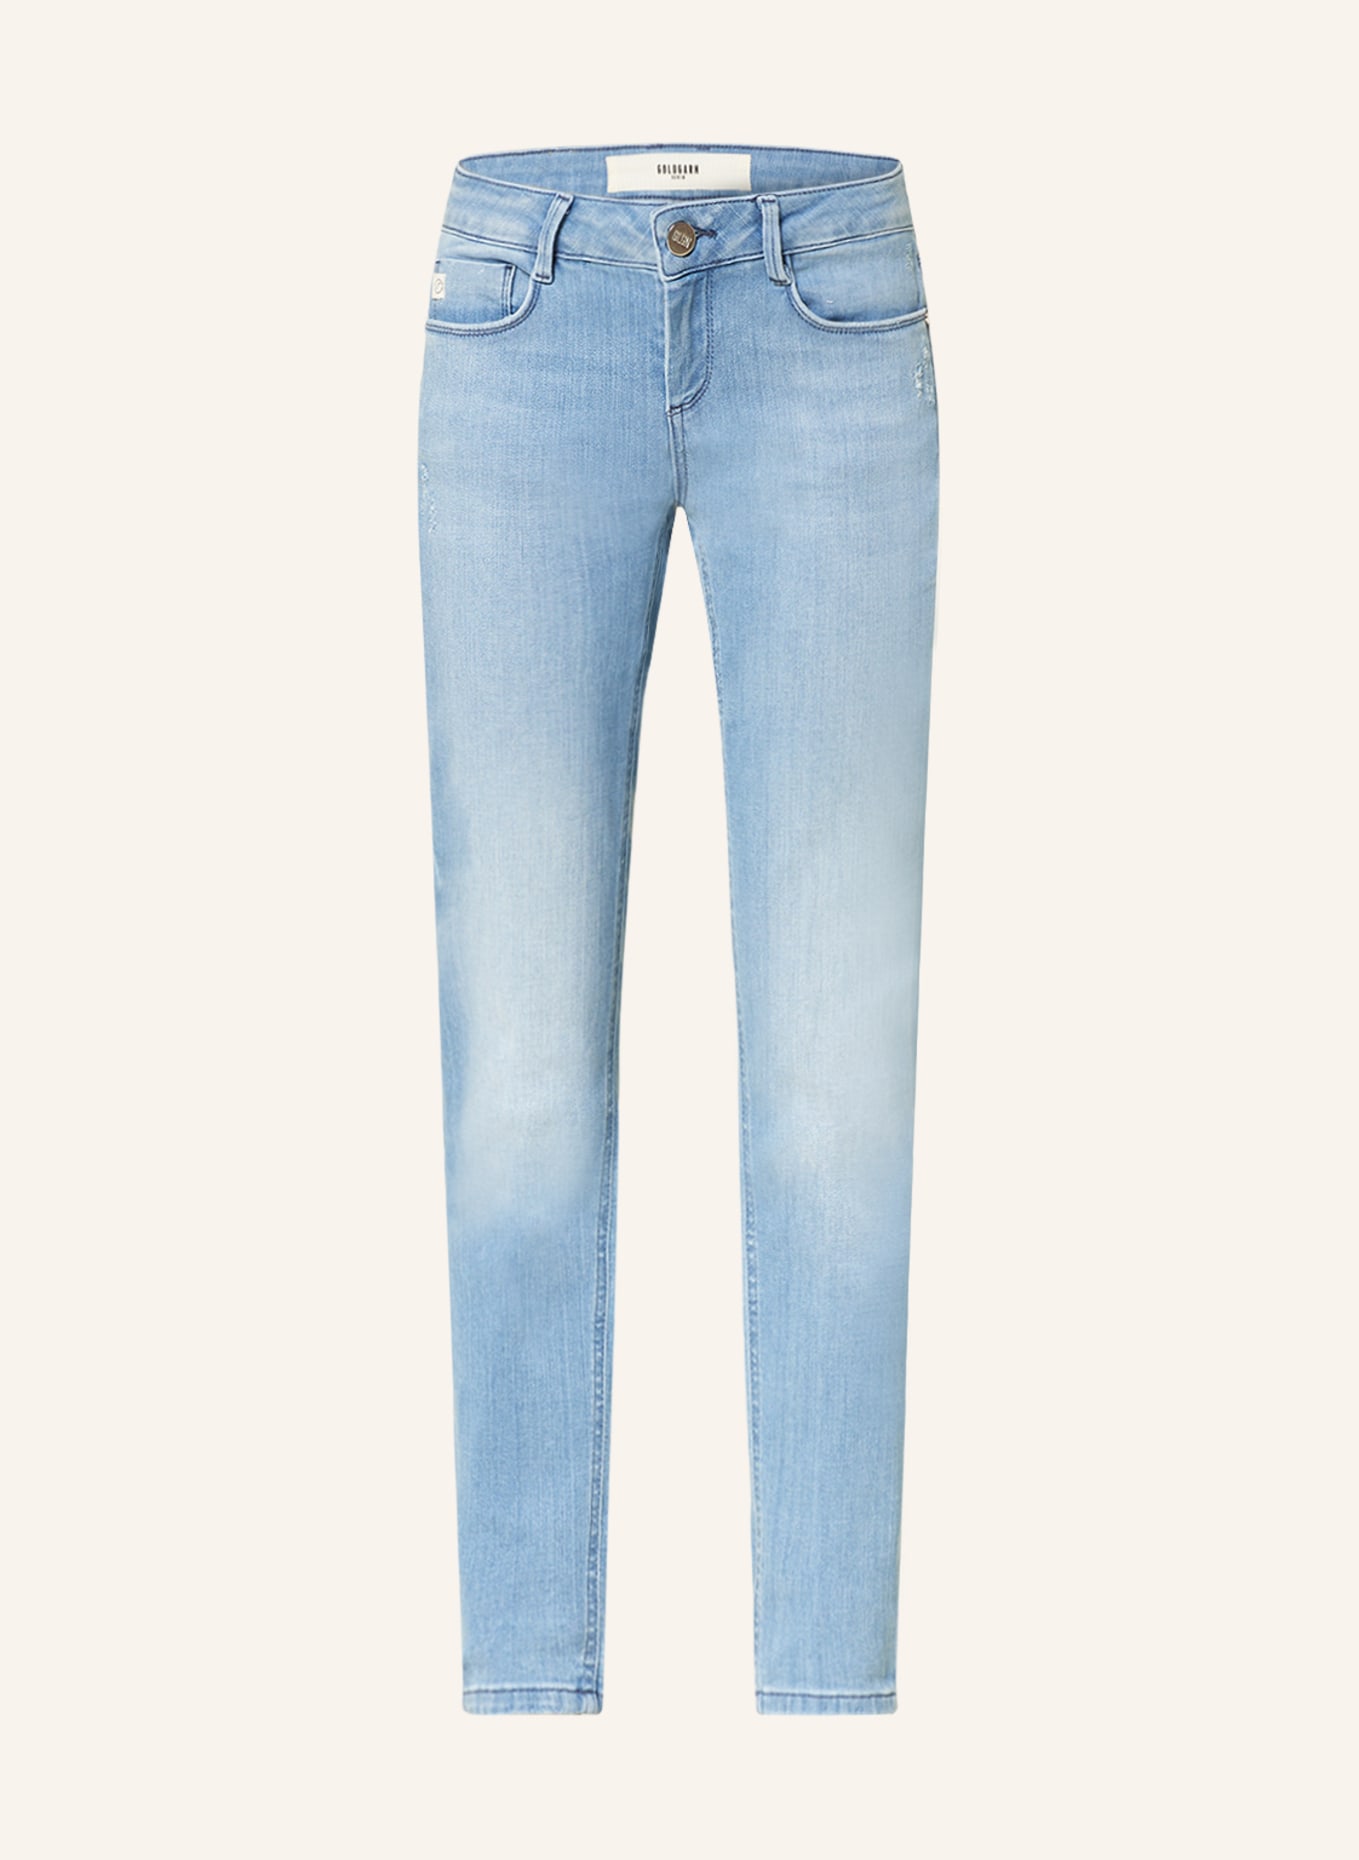 GOLDGARN DENIM Skinny jeans JUNGBUSCH, Color: 1070 light blue (Image 1)